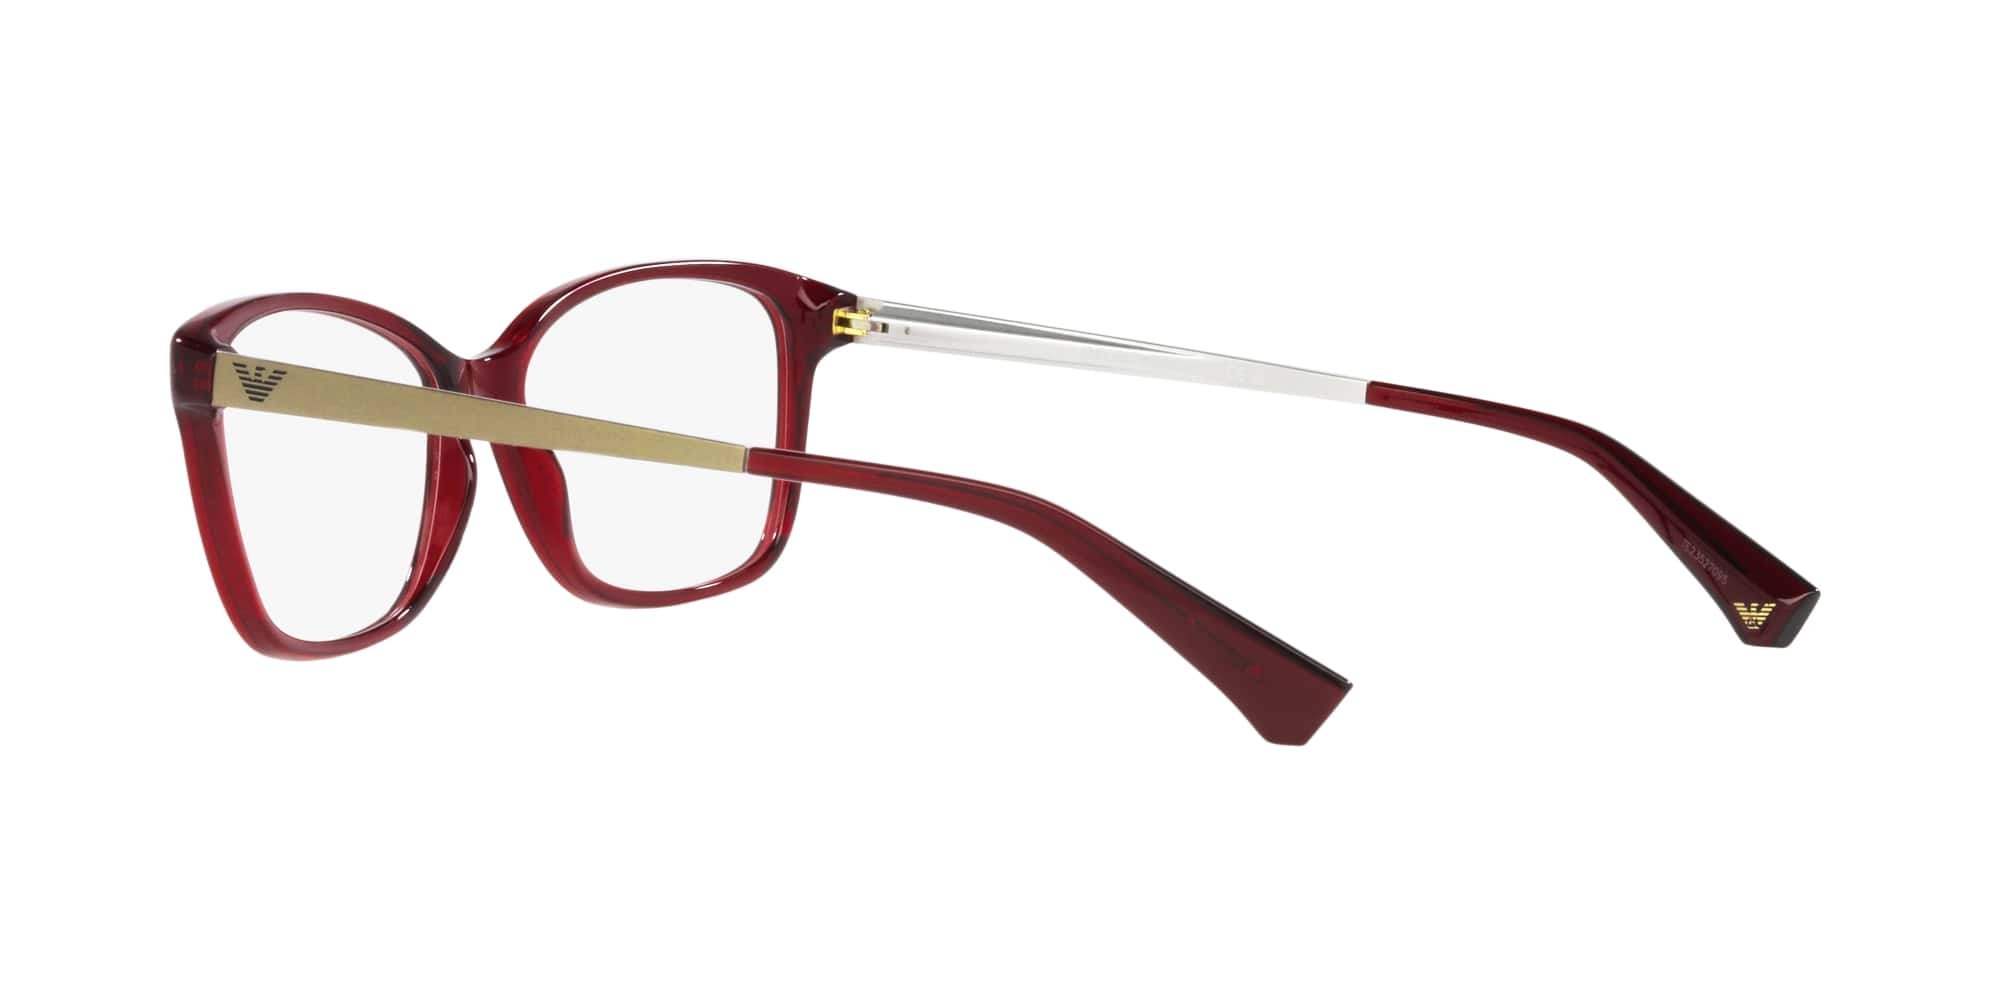 Das Bild zeigt die Korrektionsbrille EA3026 5968 von der Marke Emporio Armani in Bordeaux.